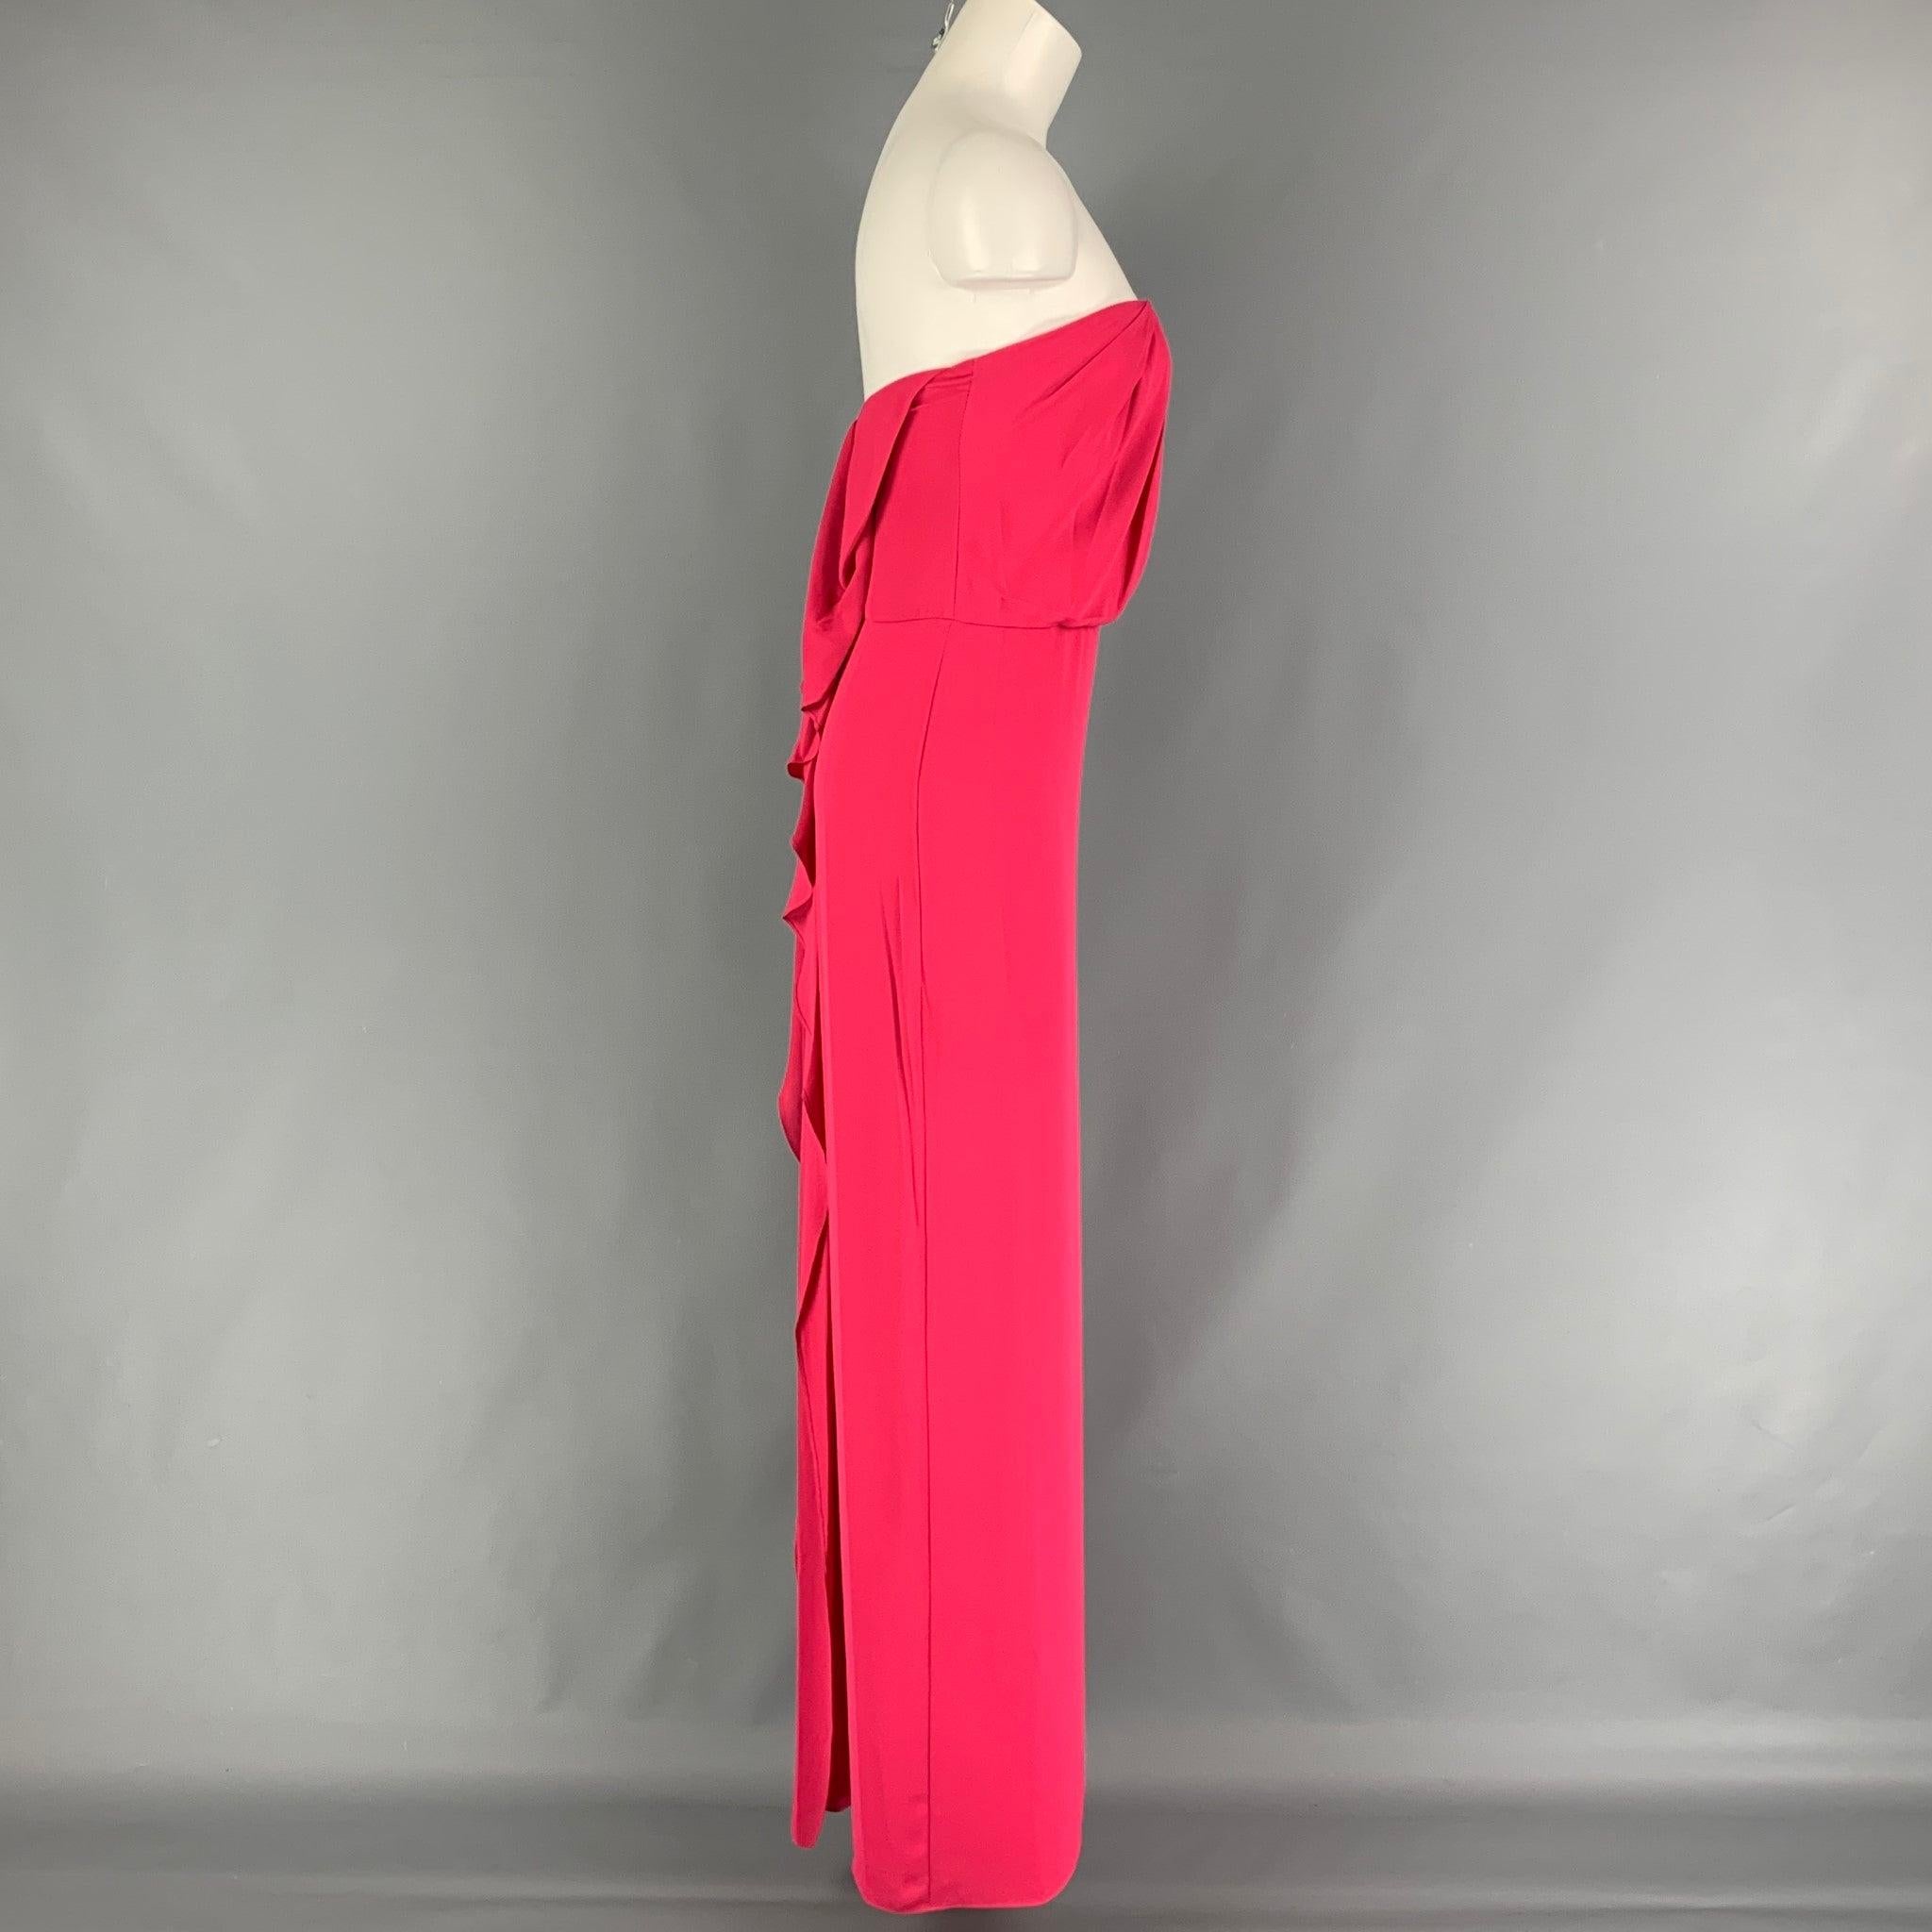 La robe HALSTON HERITAGE est en polyester rose et présente un bustier, une fente latérale haute, un drapé en cascade, un bustier intérieur et une fermeture à glissière au dos.
Nouveau avec des étiquettes.
 

Marqué :   0 

Mesures : 
  Poitrine : 27